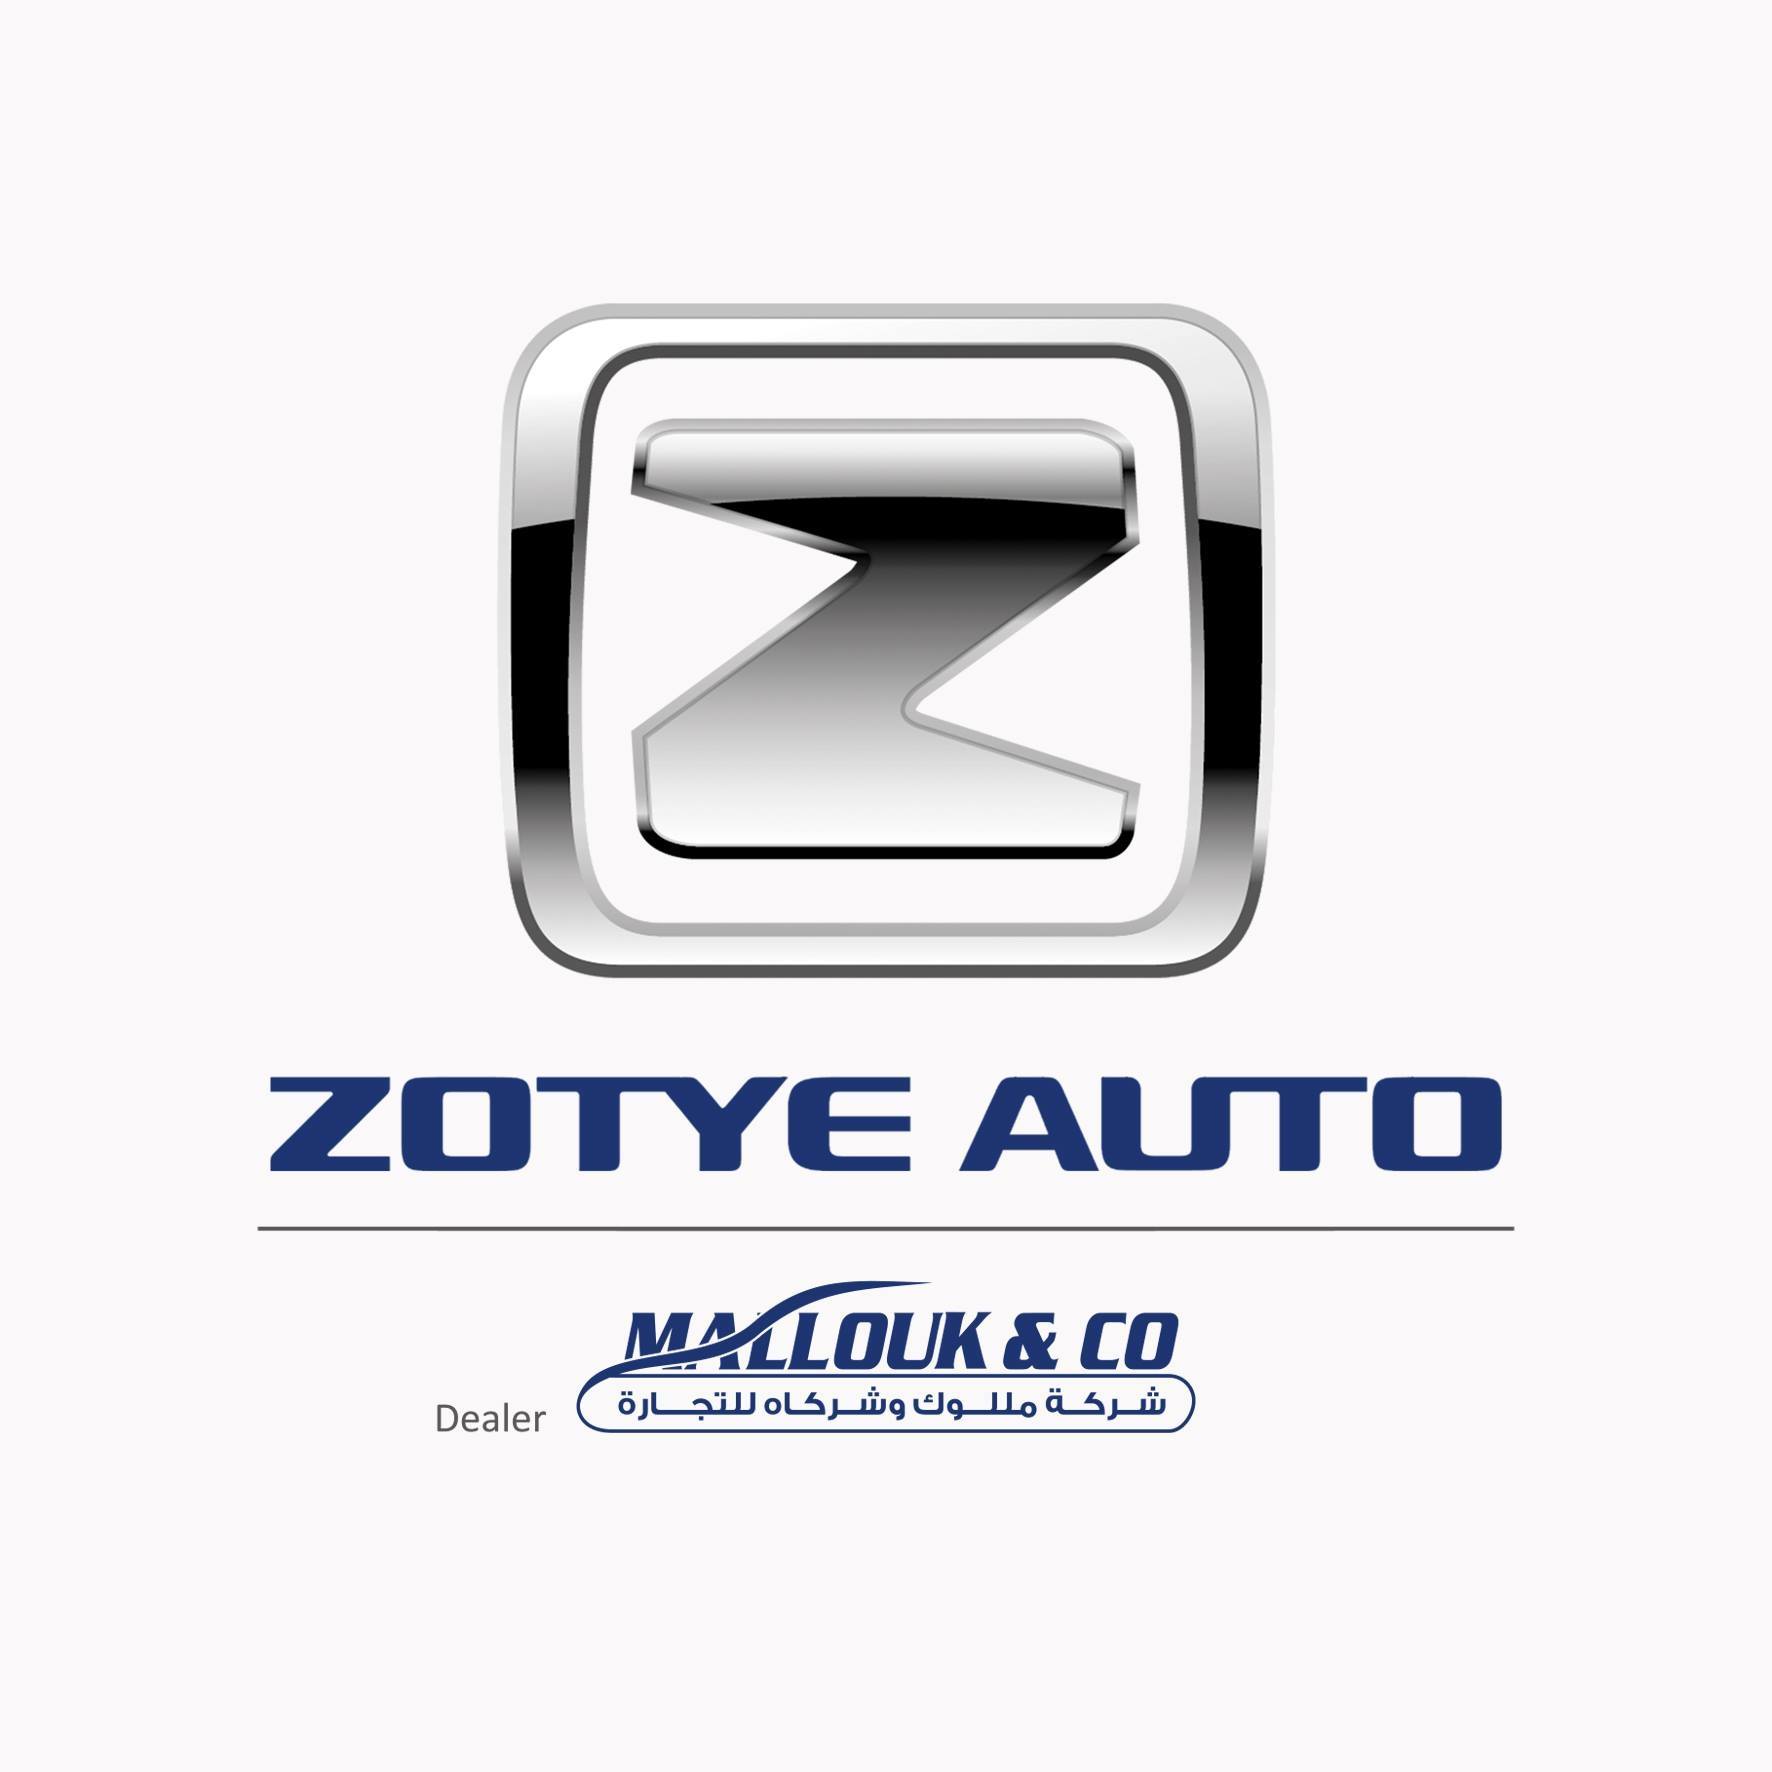  وكلاء سيارات زوتي Zotye في الاردن شركة مللوك و شركاه للتجارة